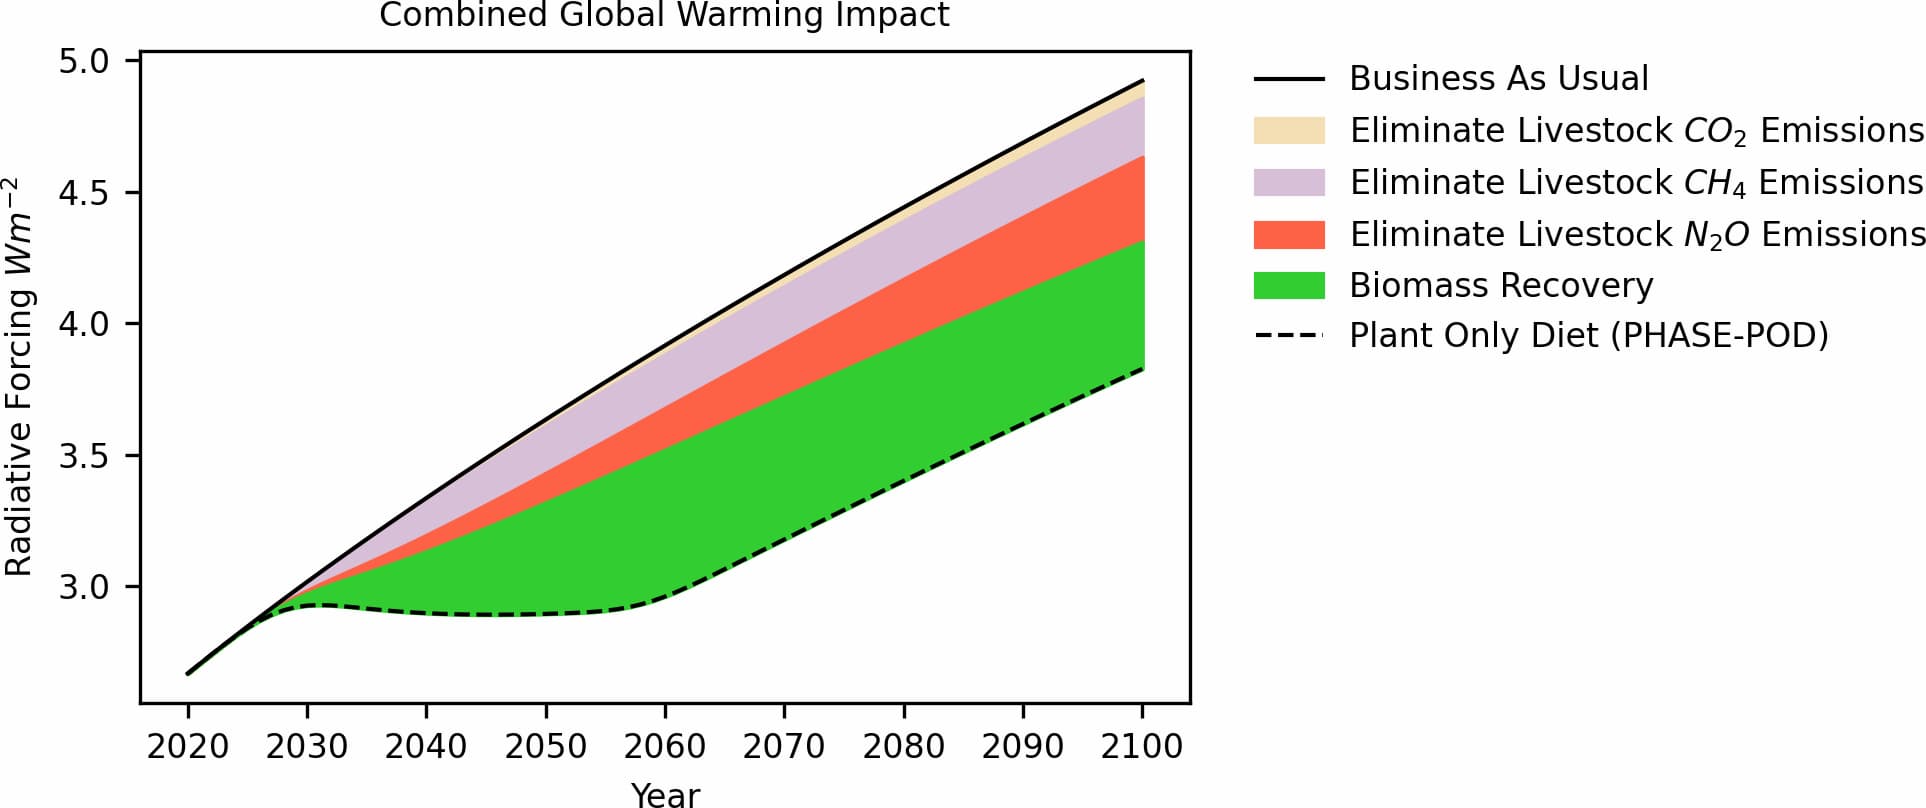 畜産に関連する排出物の除去と，現在畜産に使用されている土地でのバイオマス回収が，大気の瞬間的な温暖化の可能性を示す指標である放射強制力（RF）に与える影響。出典：Eisen et al(2022) https://doi.org/10.1371/journal.pclm.0000010.g003